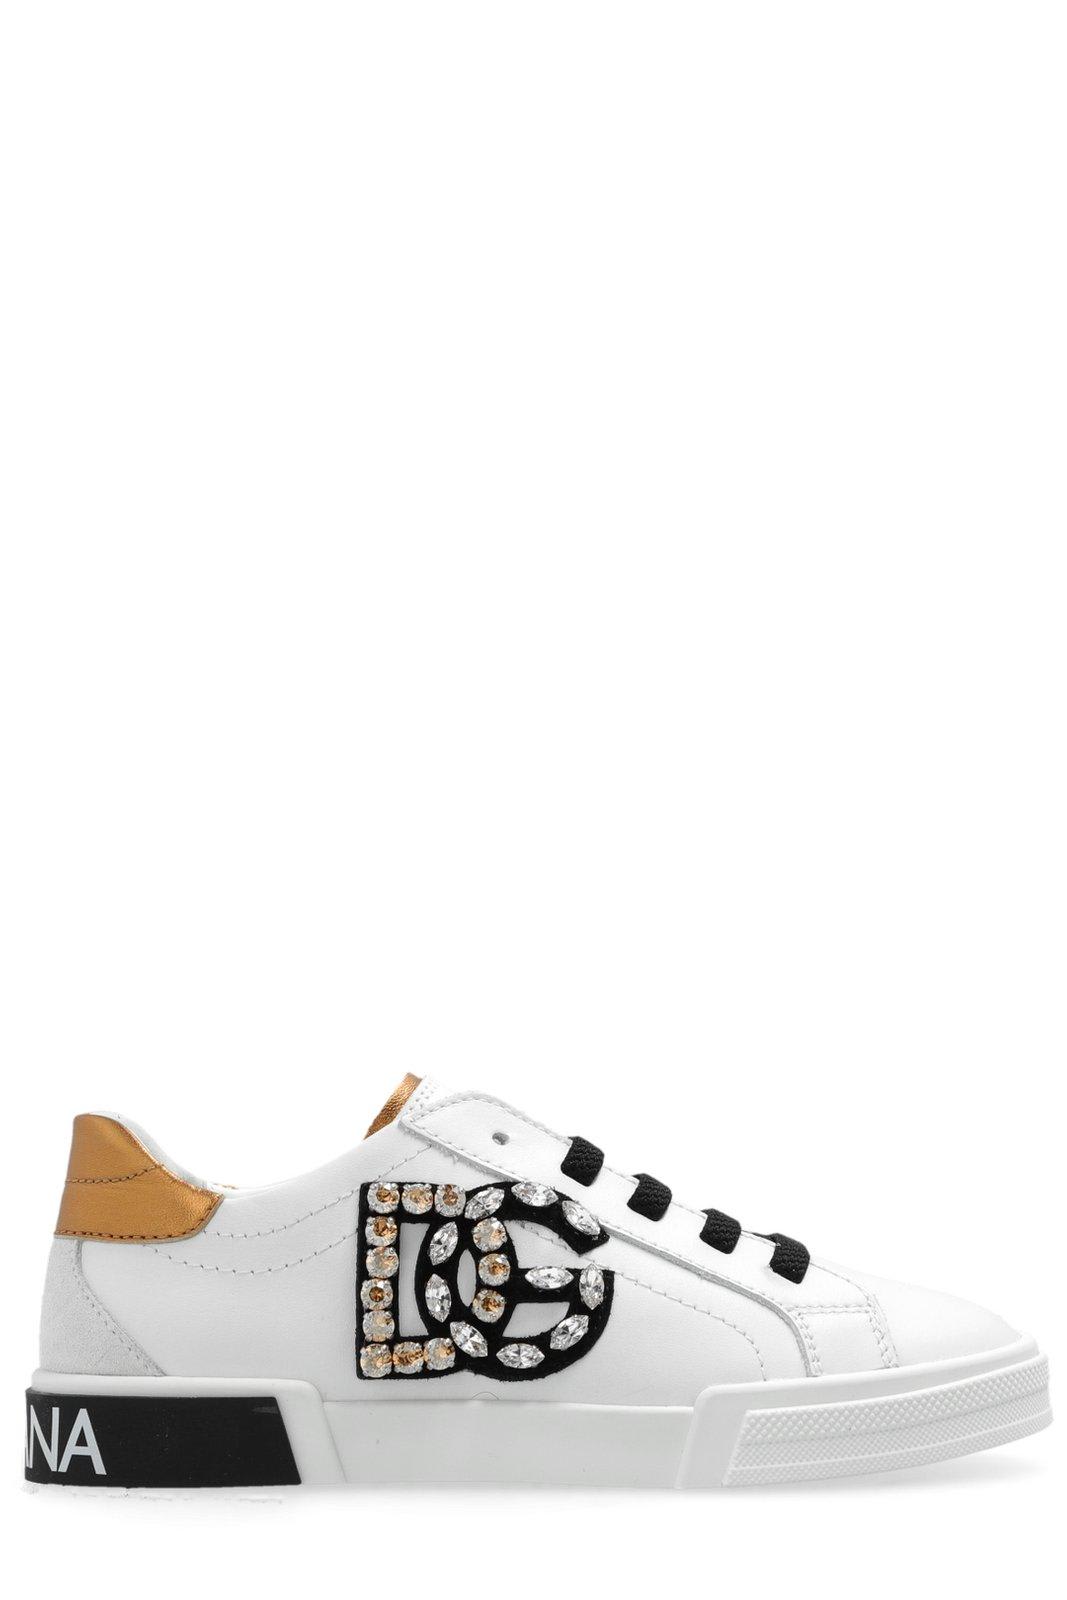 Shop Dolce & Gabbana Portofino Vintage Sneakers In Nero/oro